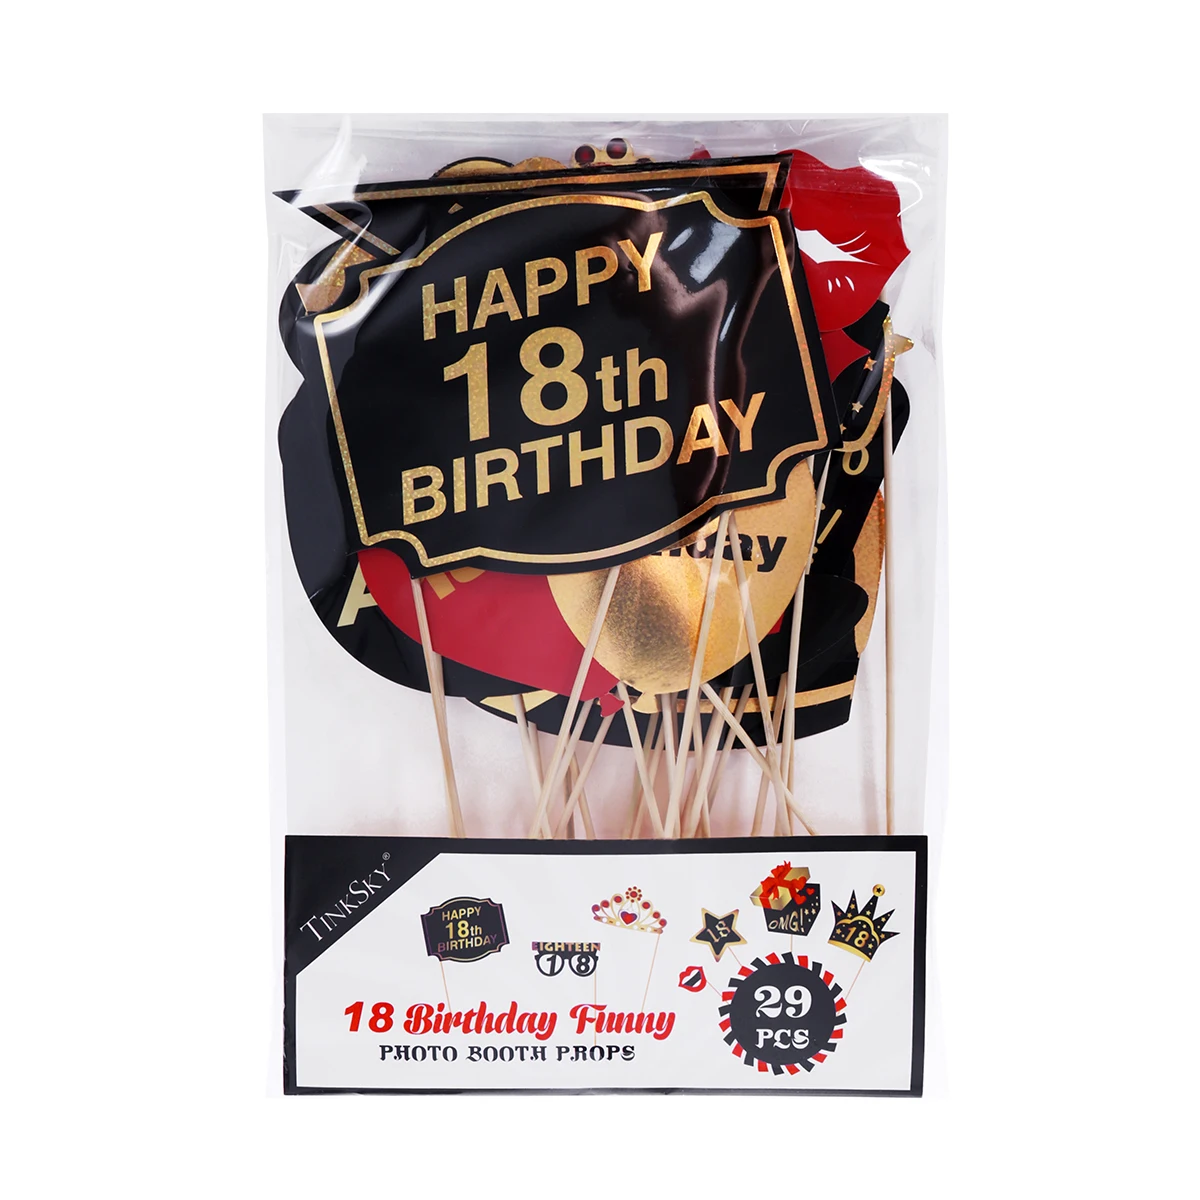 Tinksky-accesorios para fotomatón, 29 piezas, purpurina, 18 °, decoración de fiesta de cumpleaños, suministros para favores